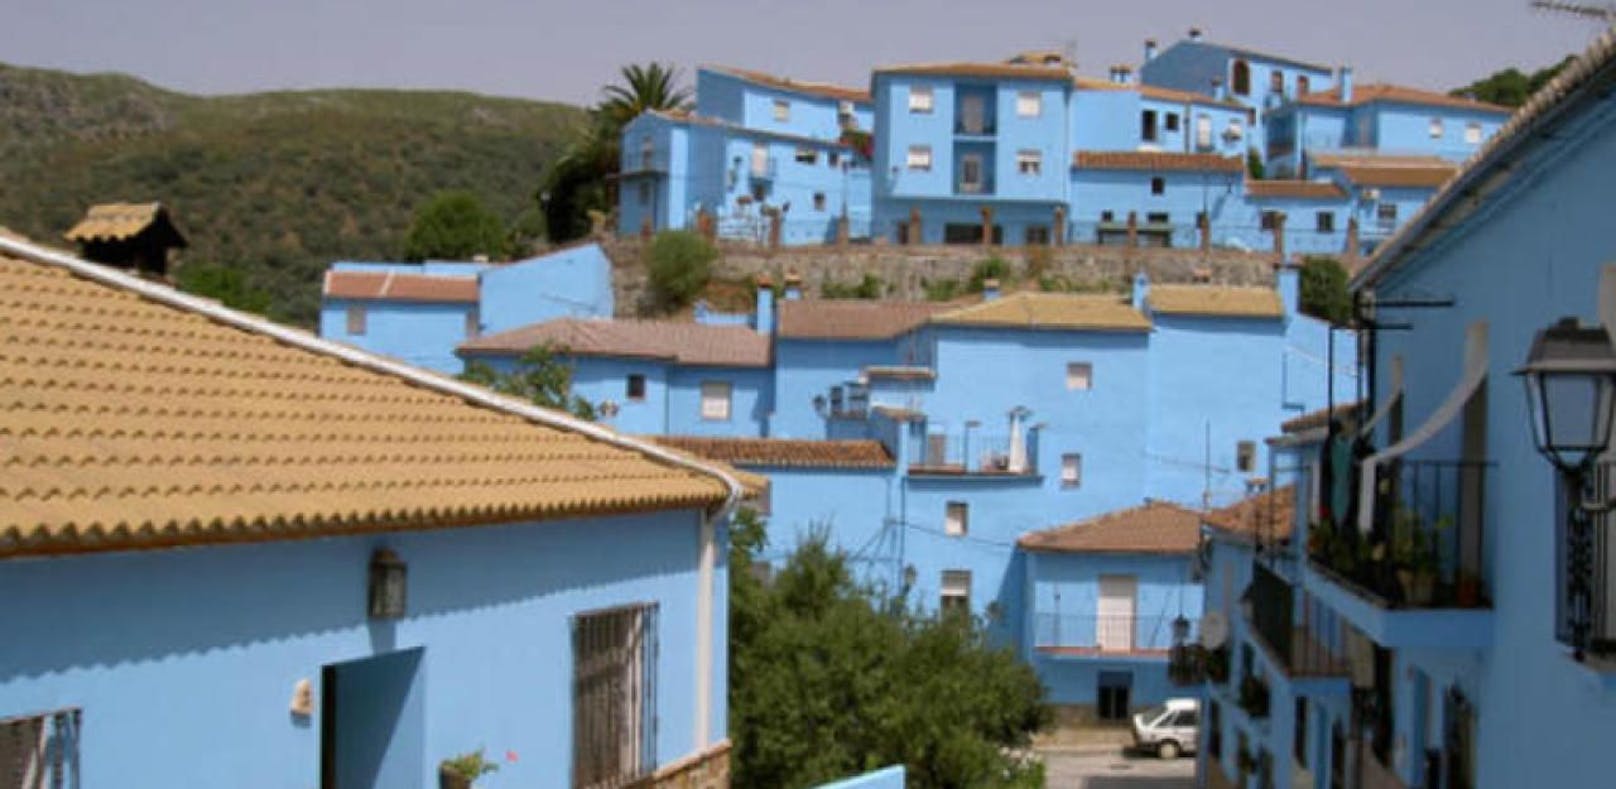 Dieses Dorf ist ständig blau